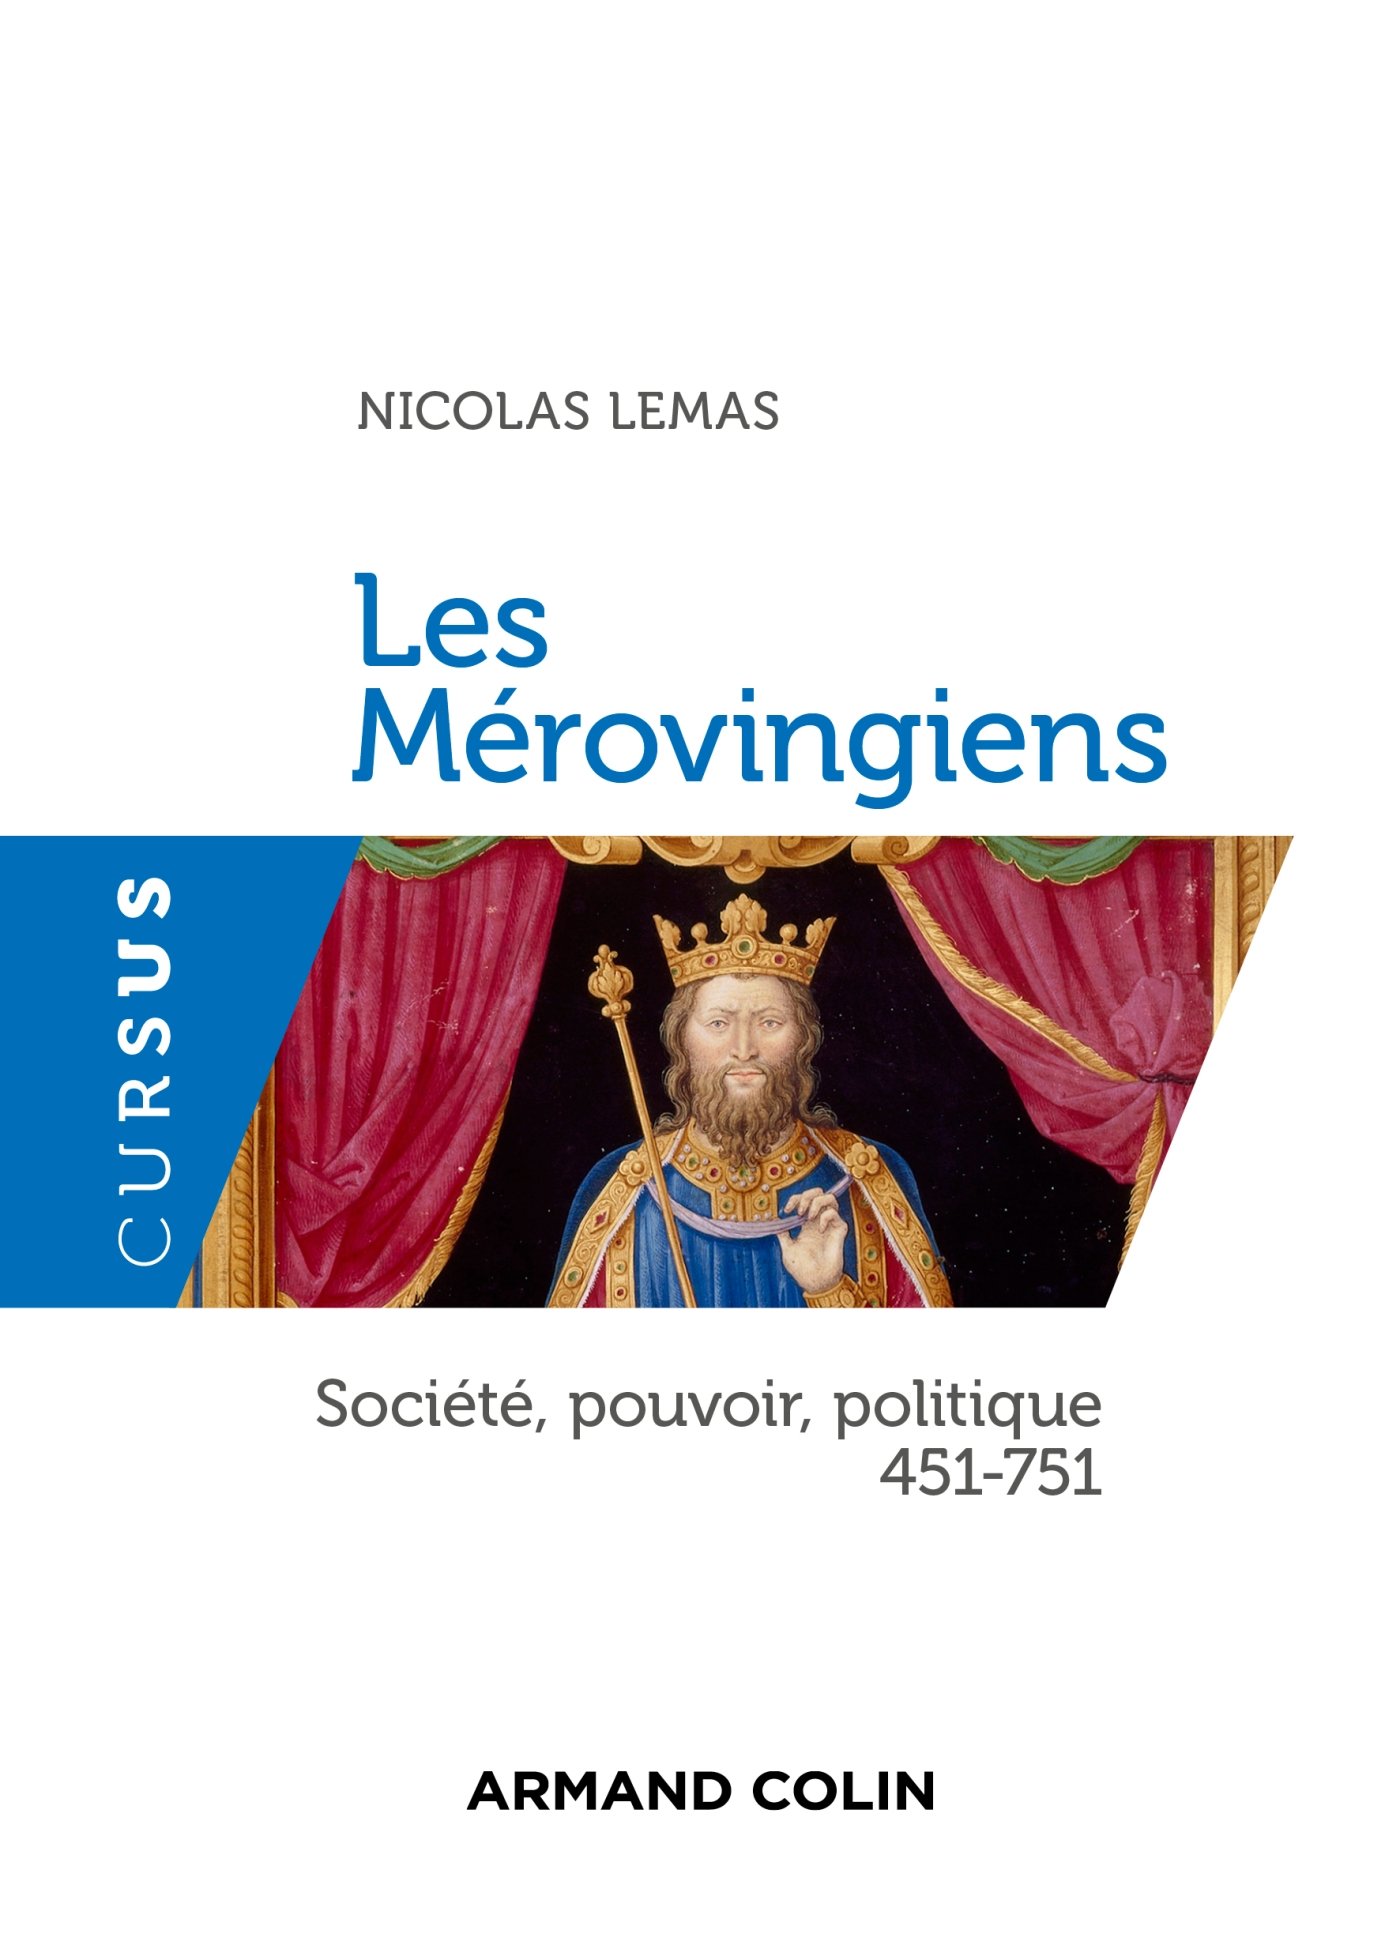 Les Mérovingiens. Société, pouvoir, politique 451-751, 2016, 256 p.